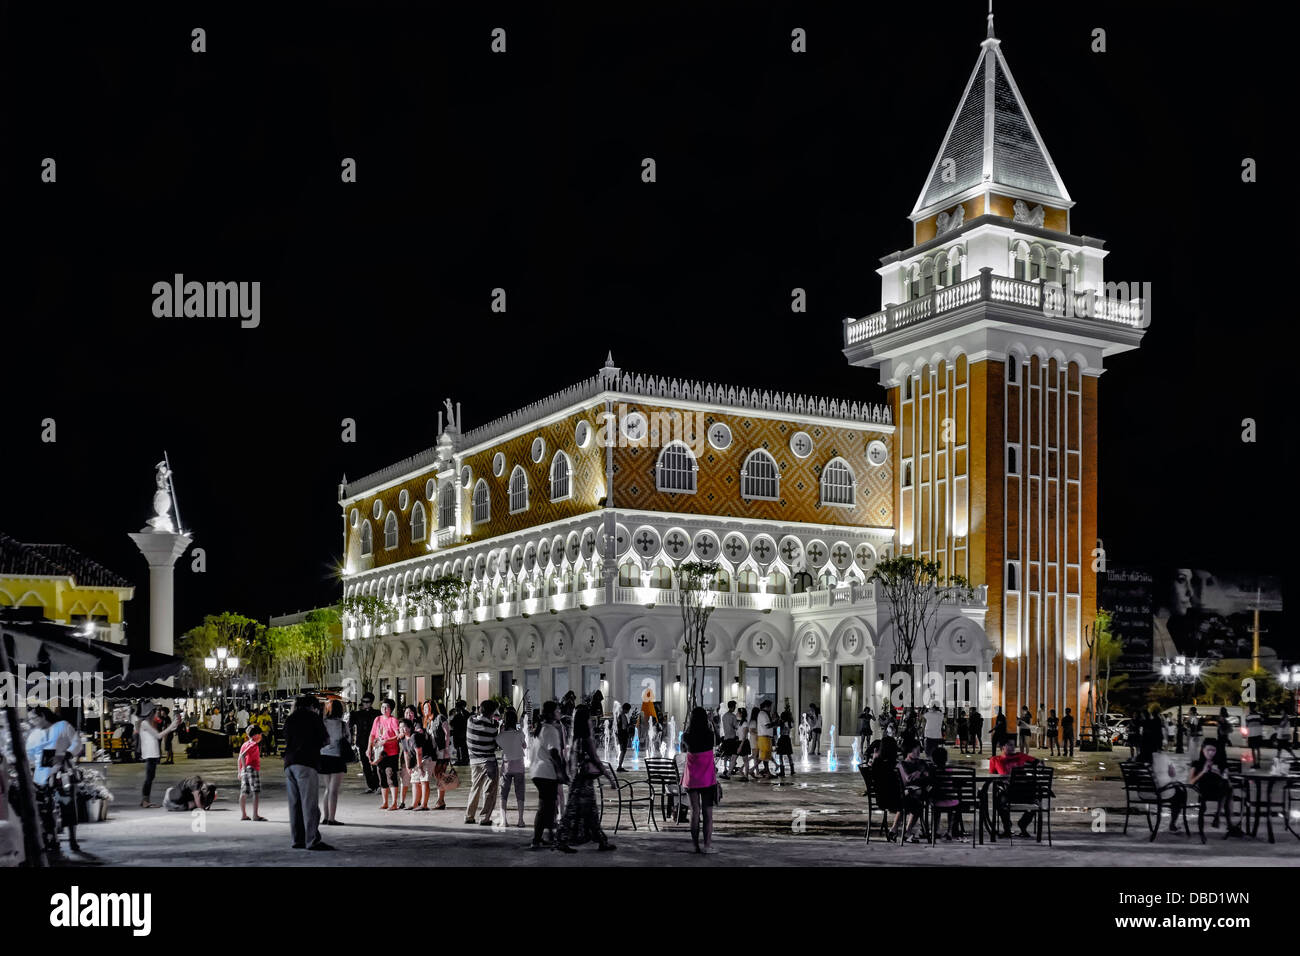 Edifici illuminati di notte. Complesso di centri commerciali a tema di Venezia di nuova costruzione, appropriatamente chiamato 'la Venezia' a Hua Hin Thailand Foto Stock